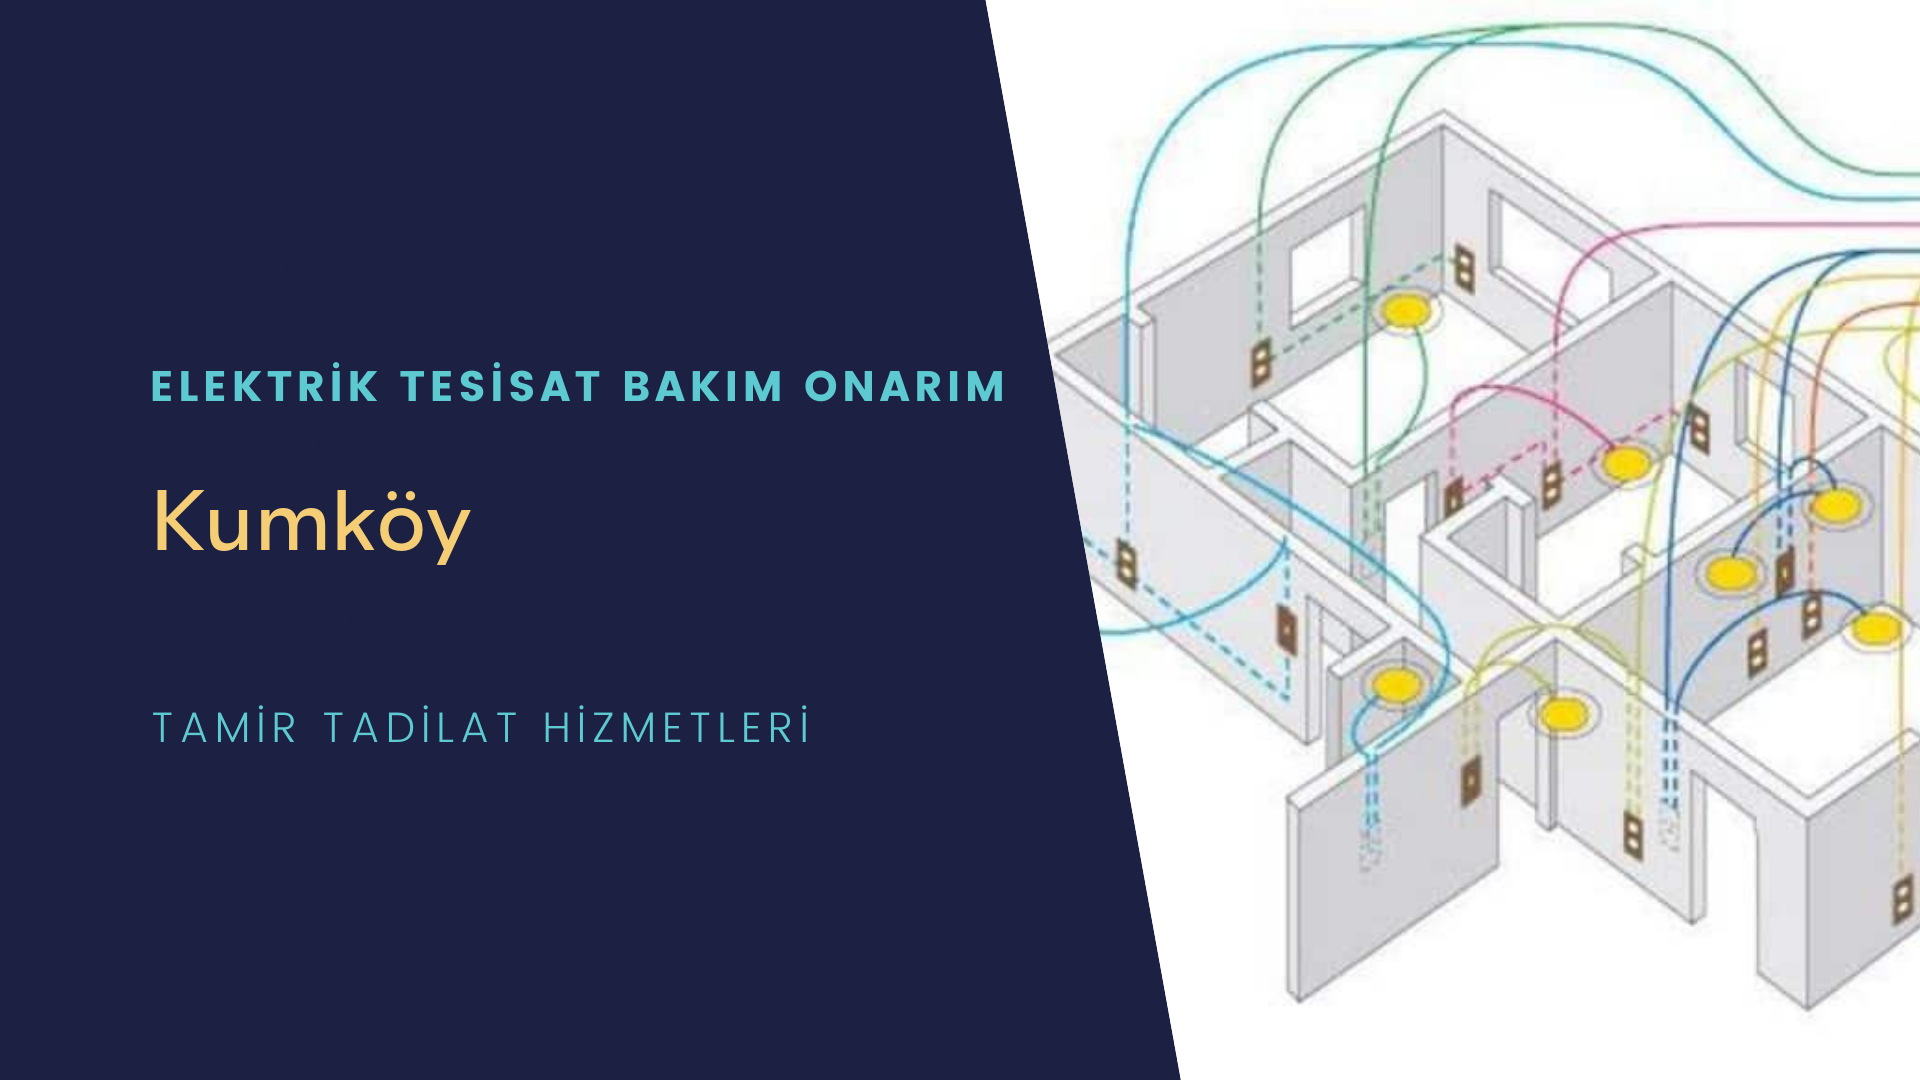 Kumköy'de elektrik tesisatı ustalarımı arıyorsunuz doğru adrestenizi Kumköy elektrik tesisatı ustalarımız 7/24 sizlere hizmet vermekten mutluluk duyar.